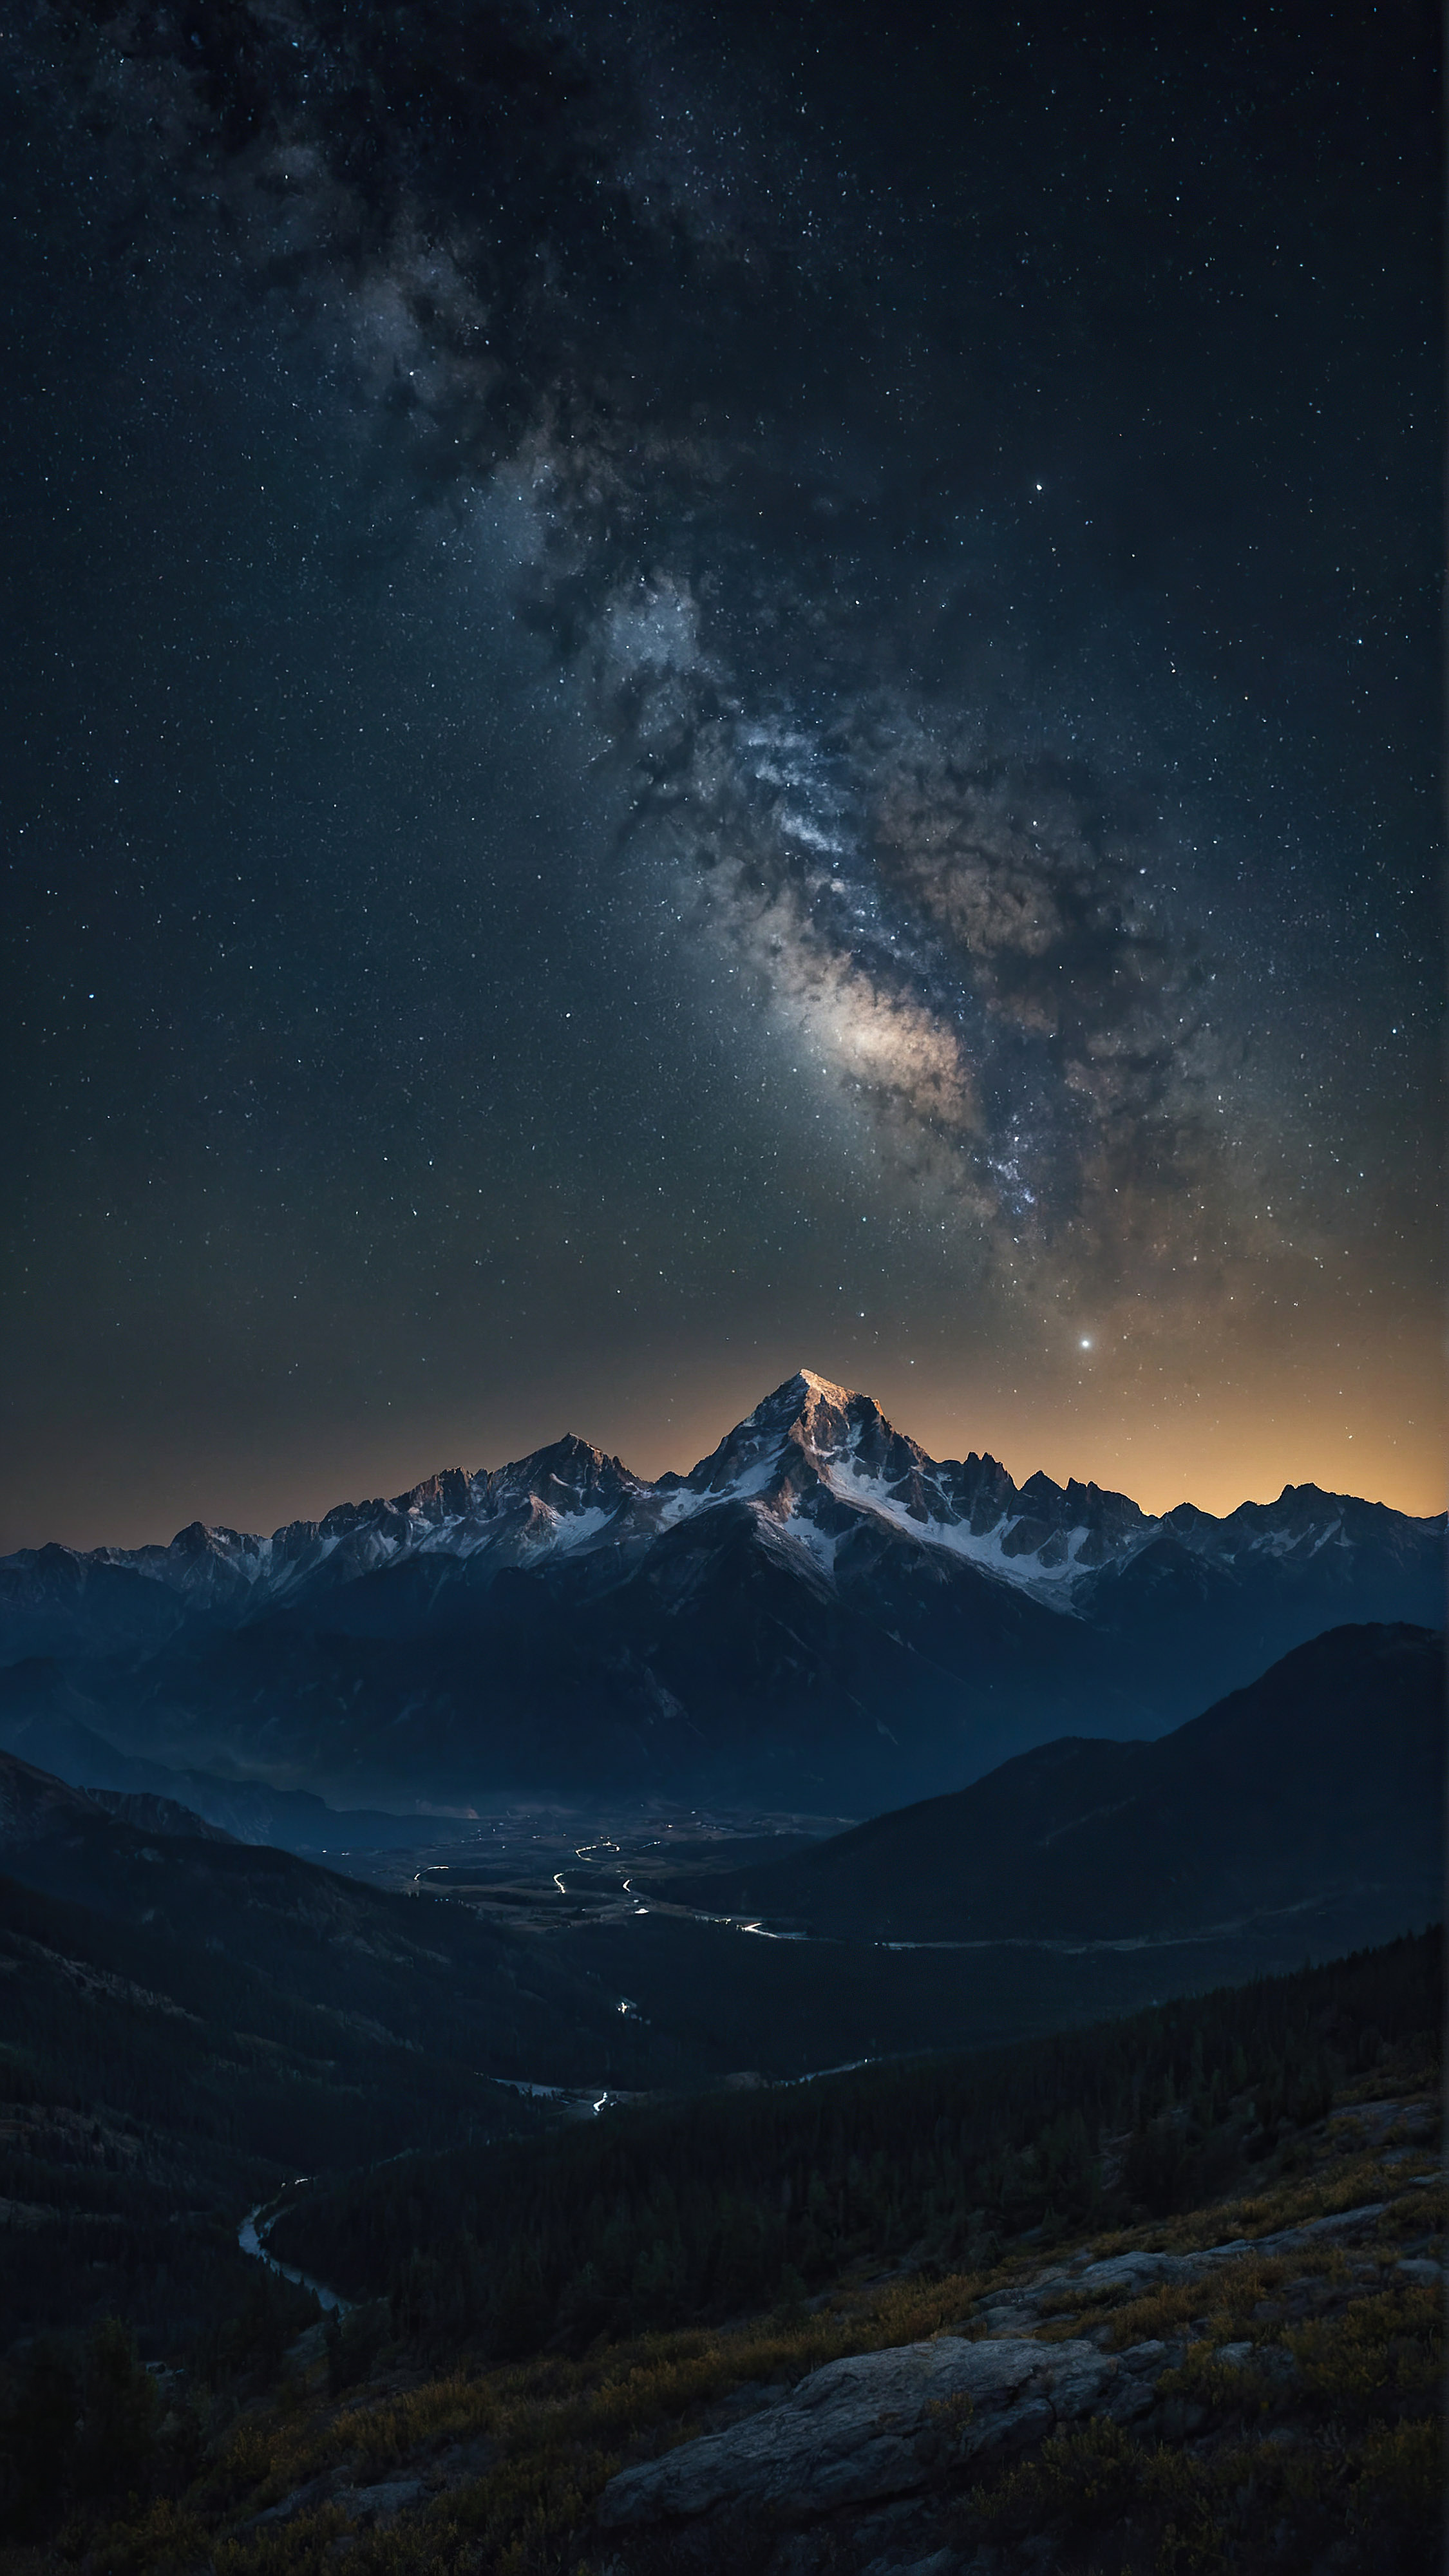 Téléchargez gratuitement cet arrière-plan pour iPhone en 4K, capturant une scène nocturne à couper le souffle d'une chaîne de montagnes accidentée sous un ciel étoilé, avec d'innombrables étoiles ajoutant à l'atmosphère sereine et majestueuse du paysage.